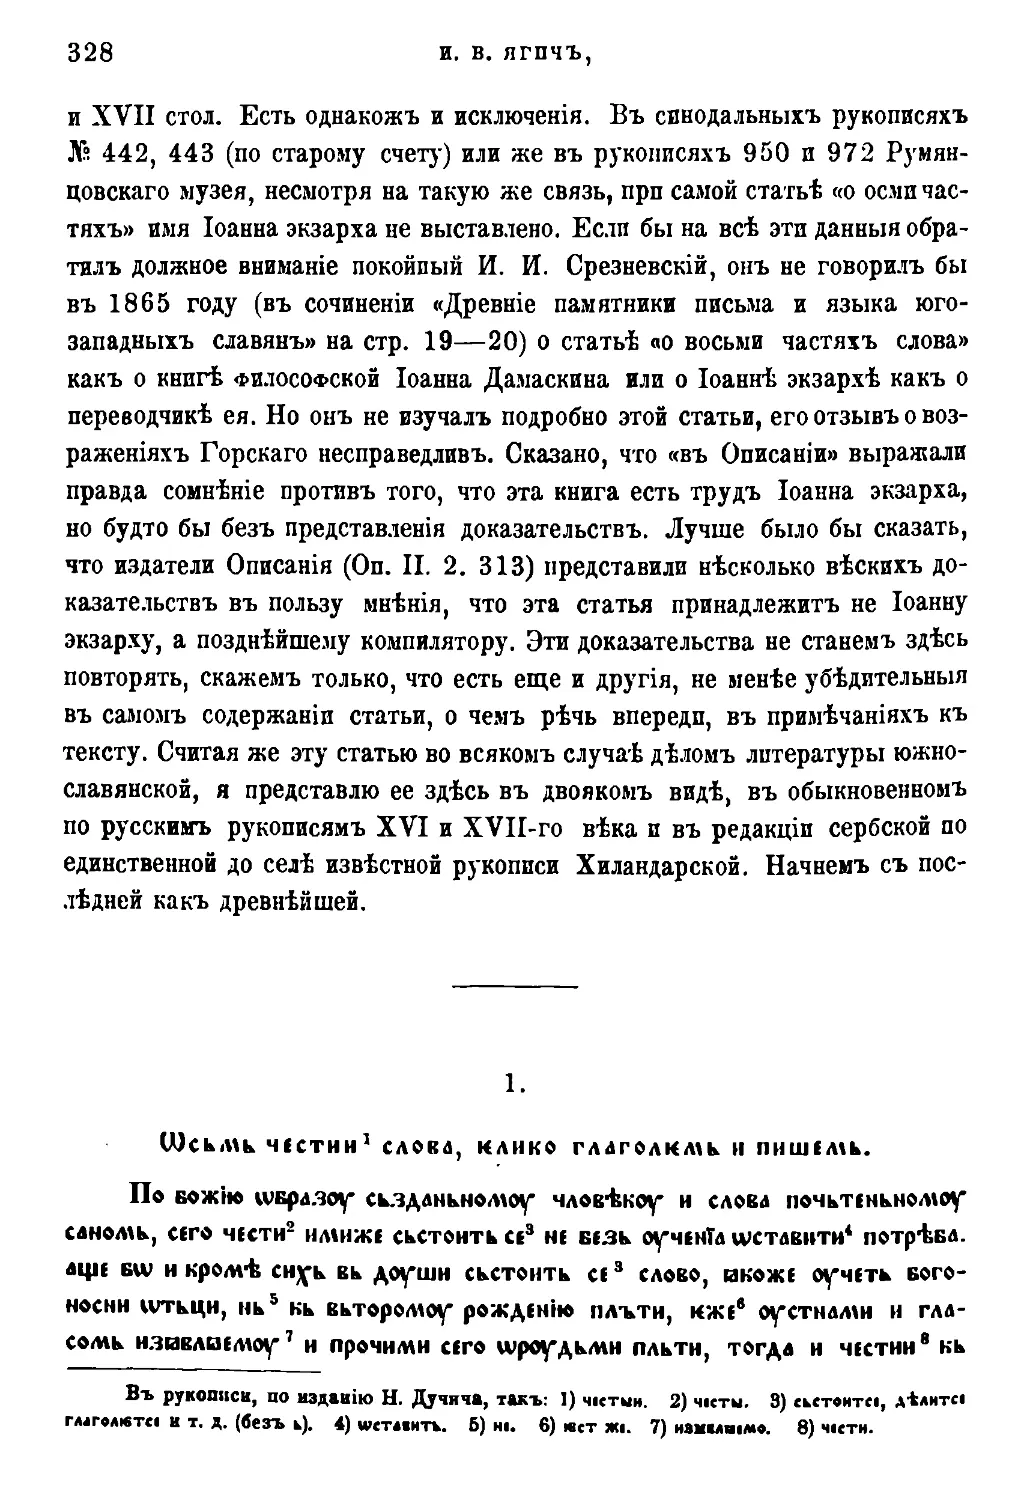 Текст сербской редакции по рукописи хиландарской [40/328]